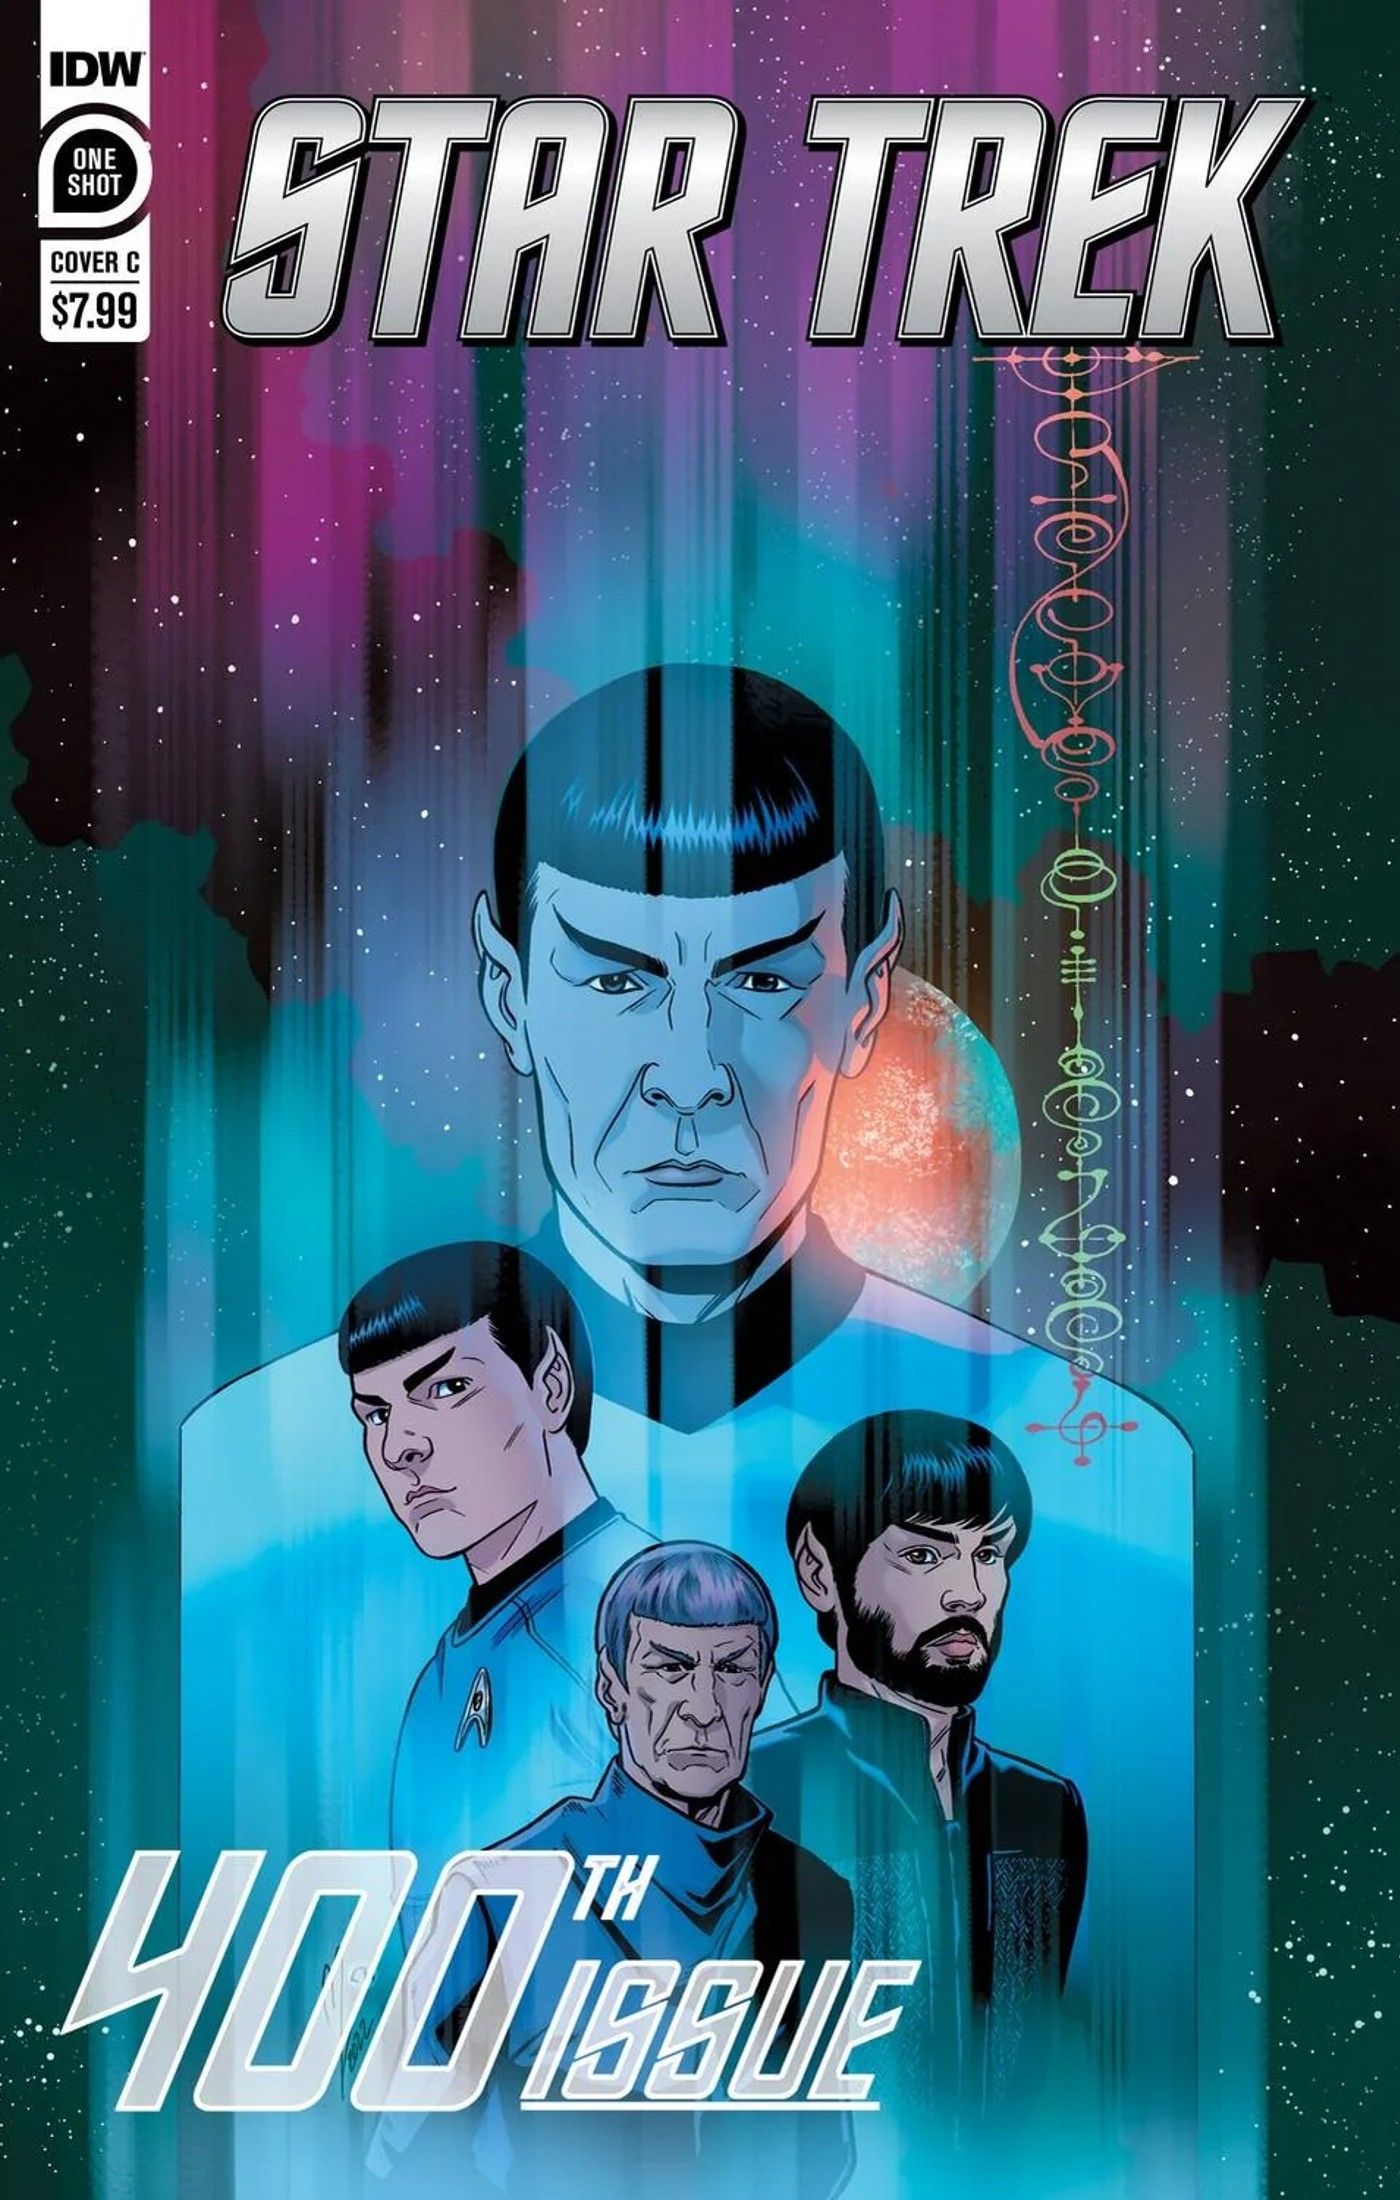 Spock spotlight for Star Trek 400